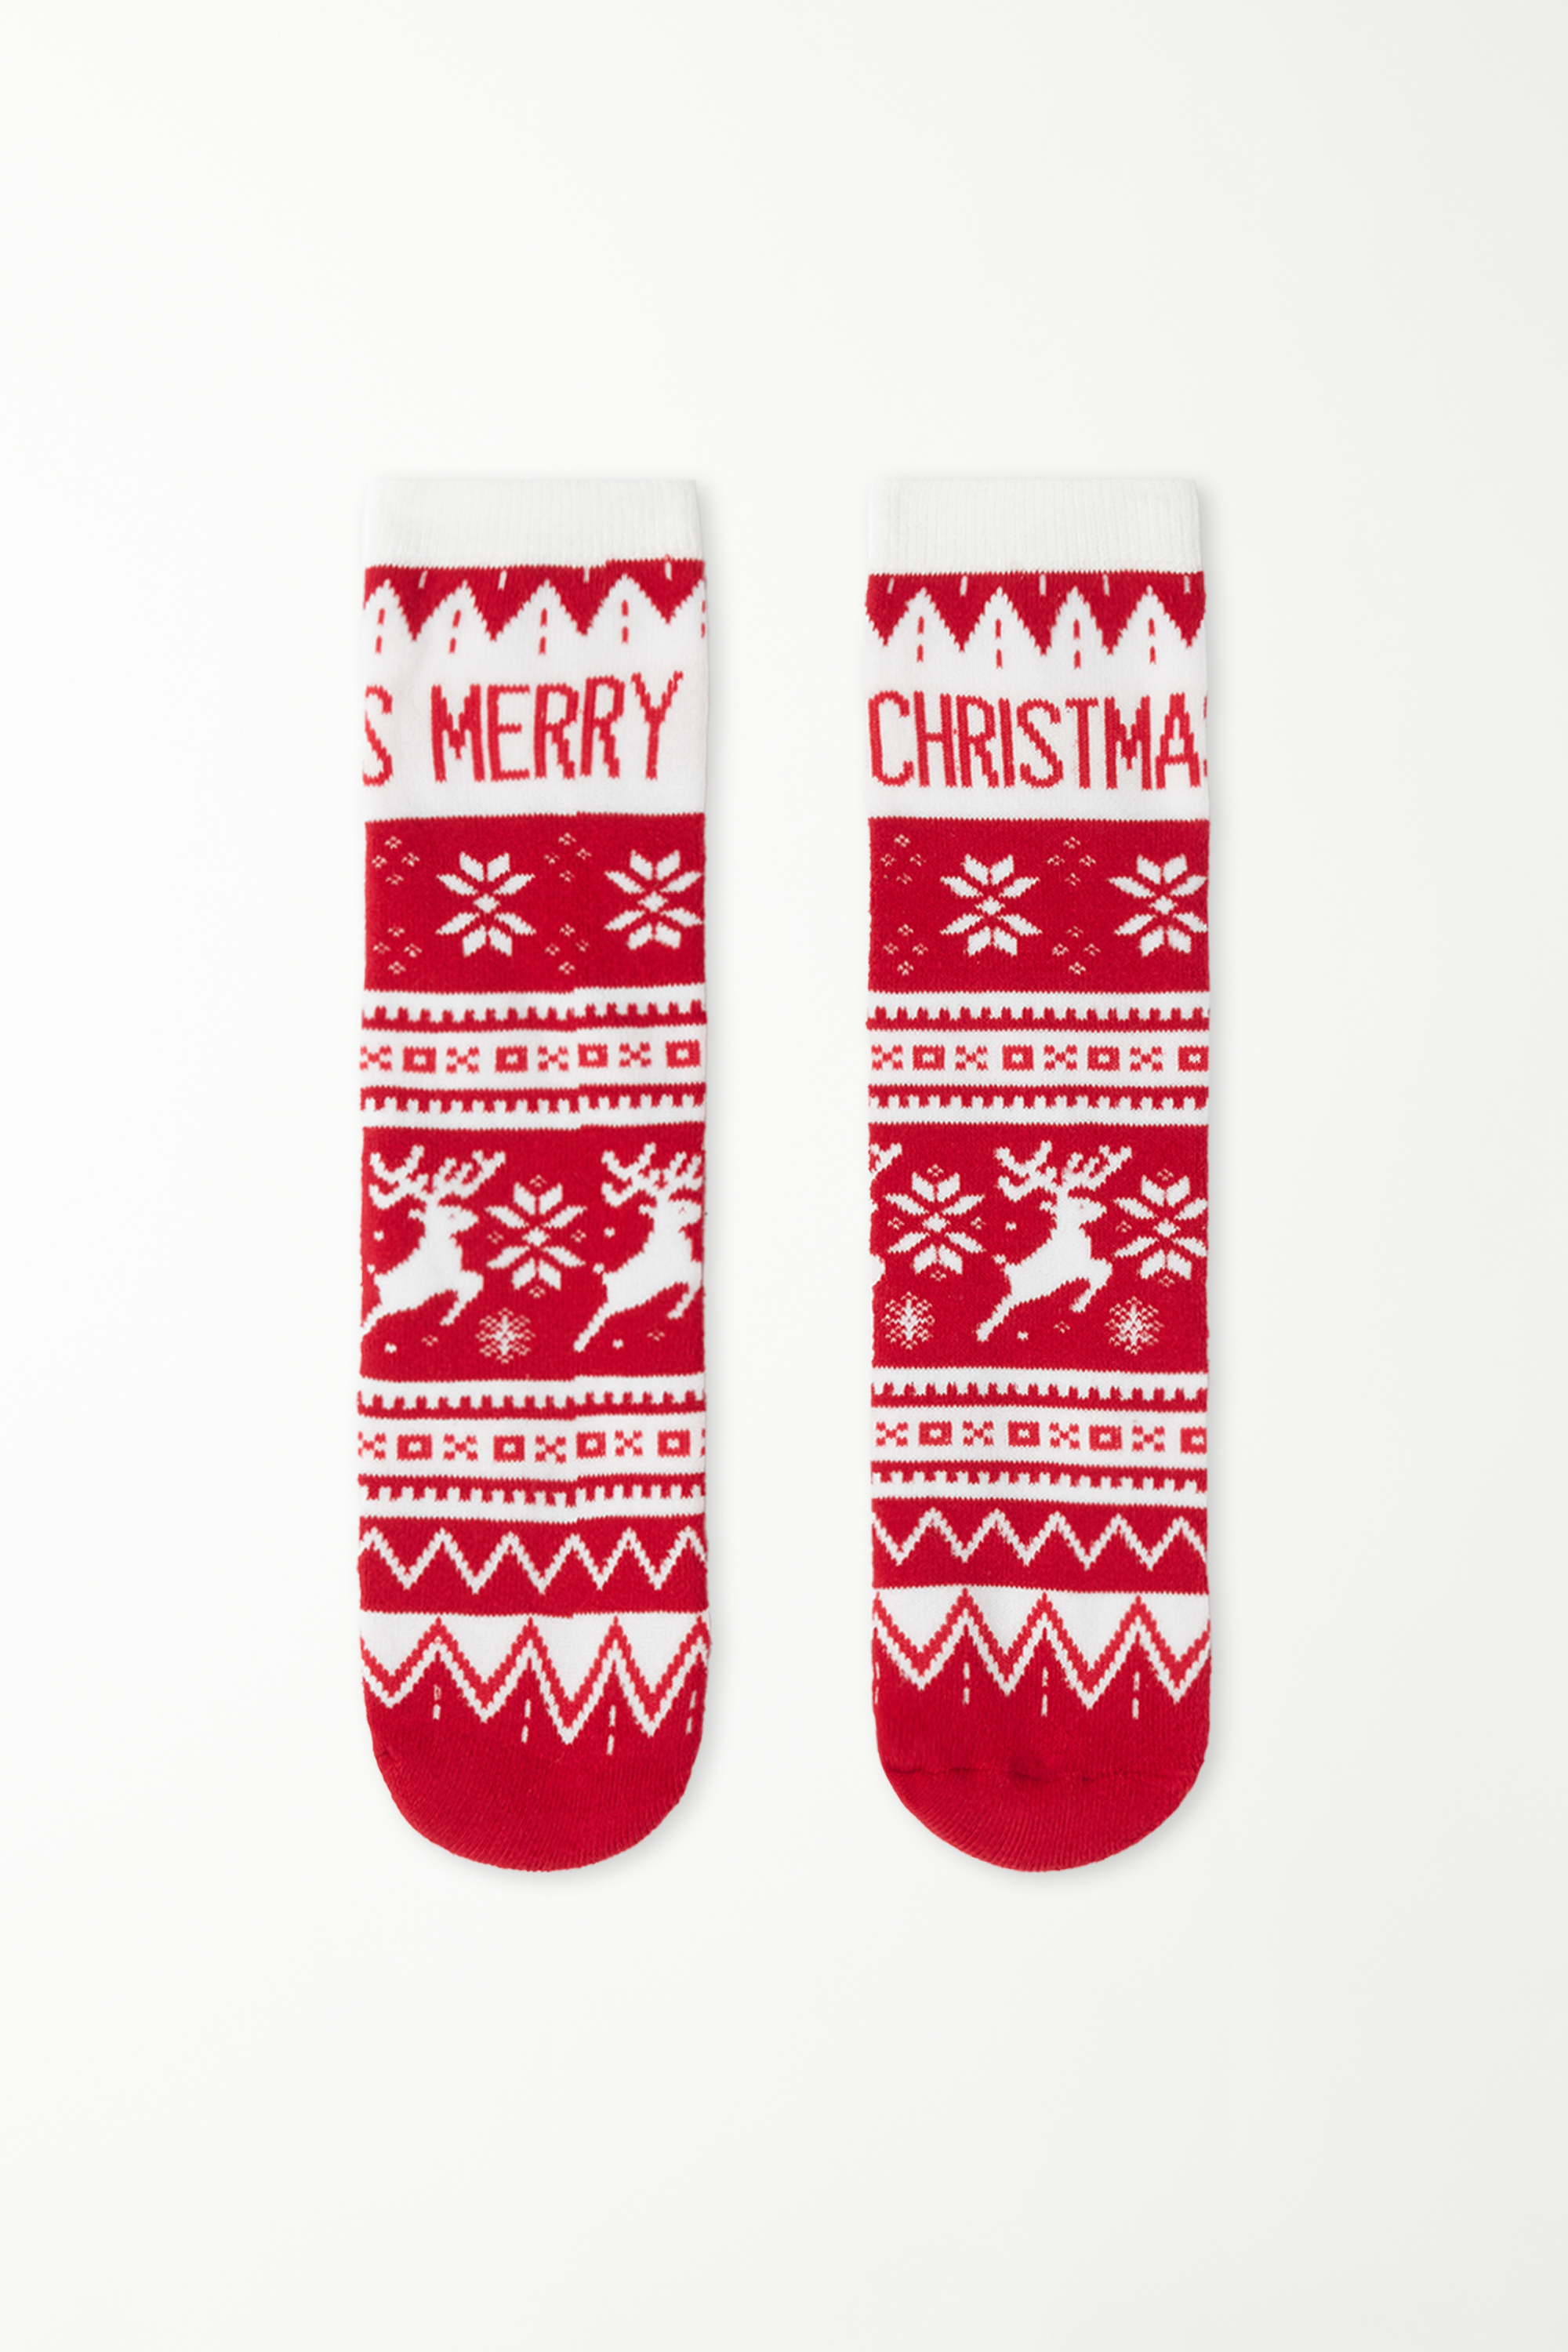 Lange, schwere Unisex-Socken mit weihnachtlichem Print für Kinder